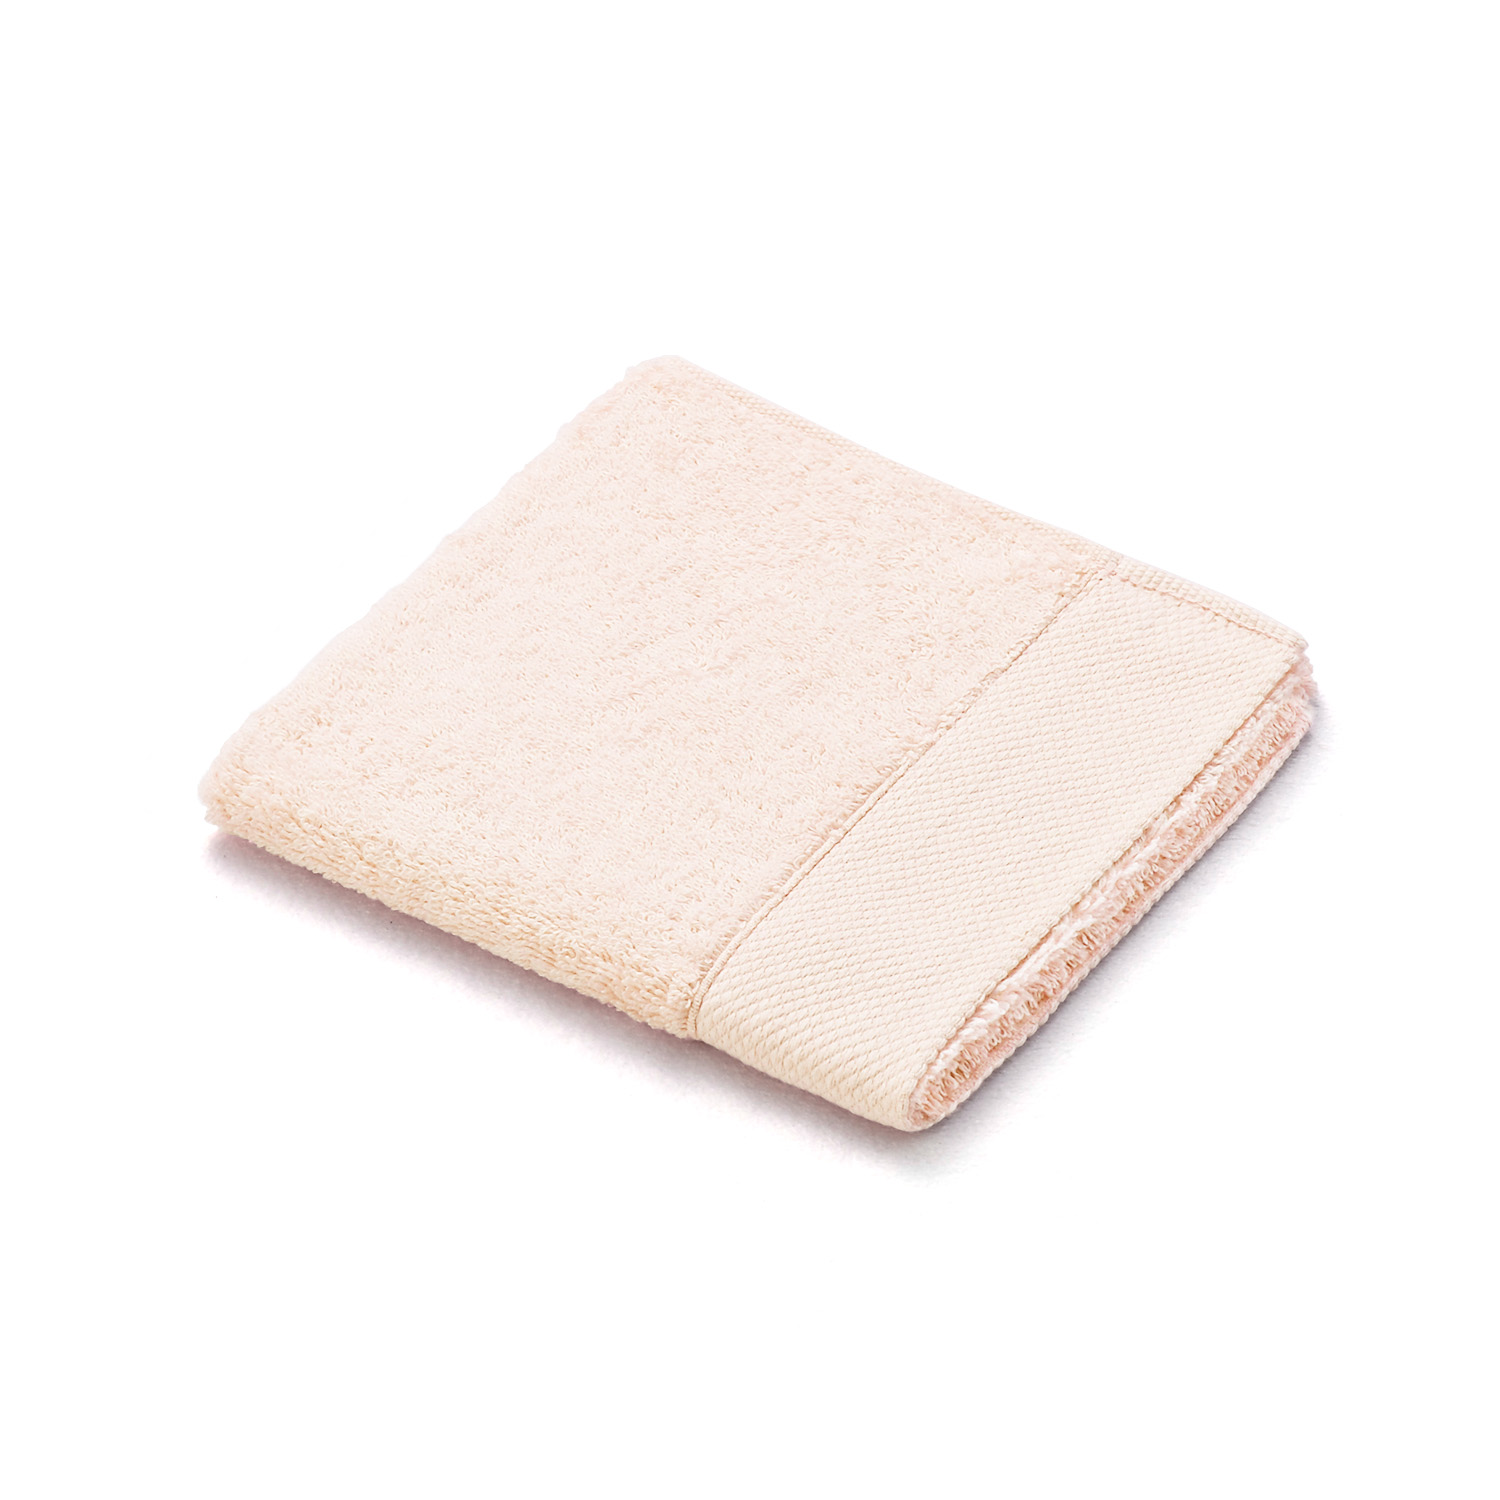 ウォッシュタオル 名入れ 刺繍 TMOC ウォッシュタオル カラーパレット 40色タオル 日本製 綿...